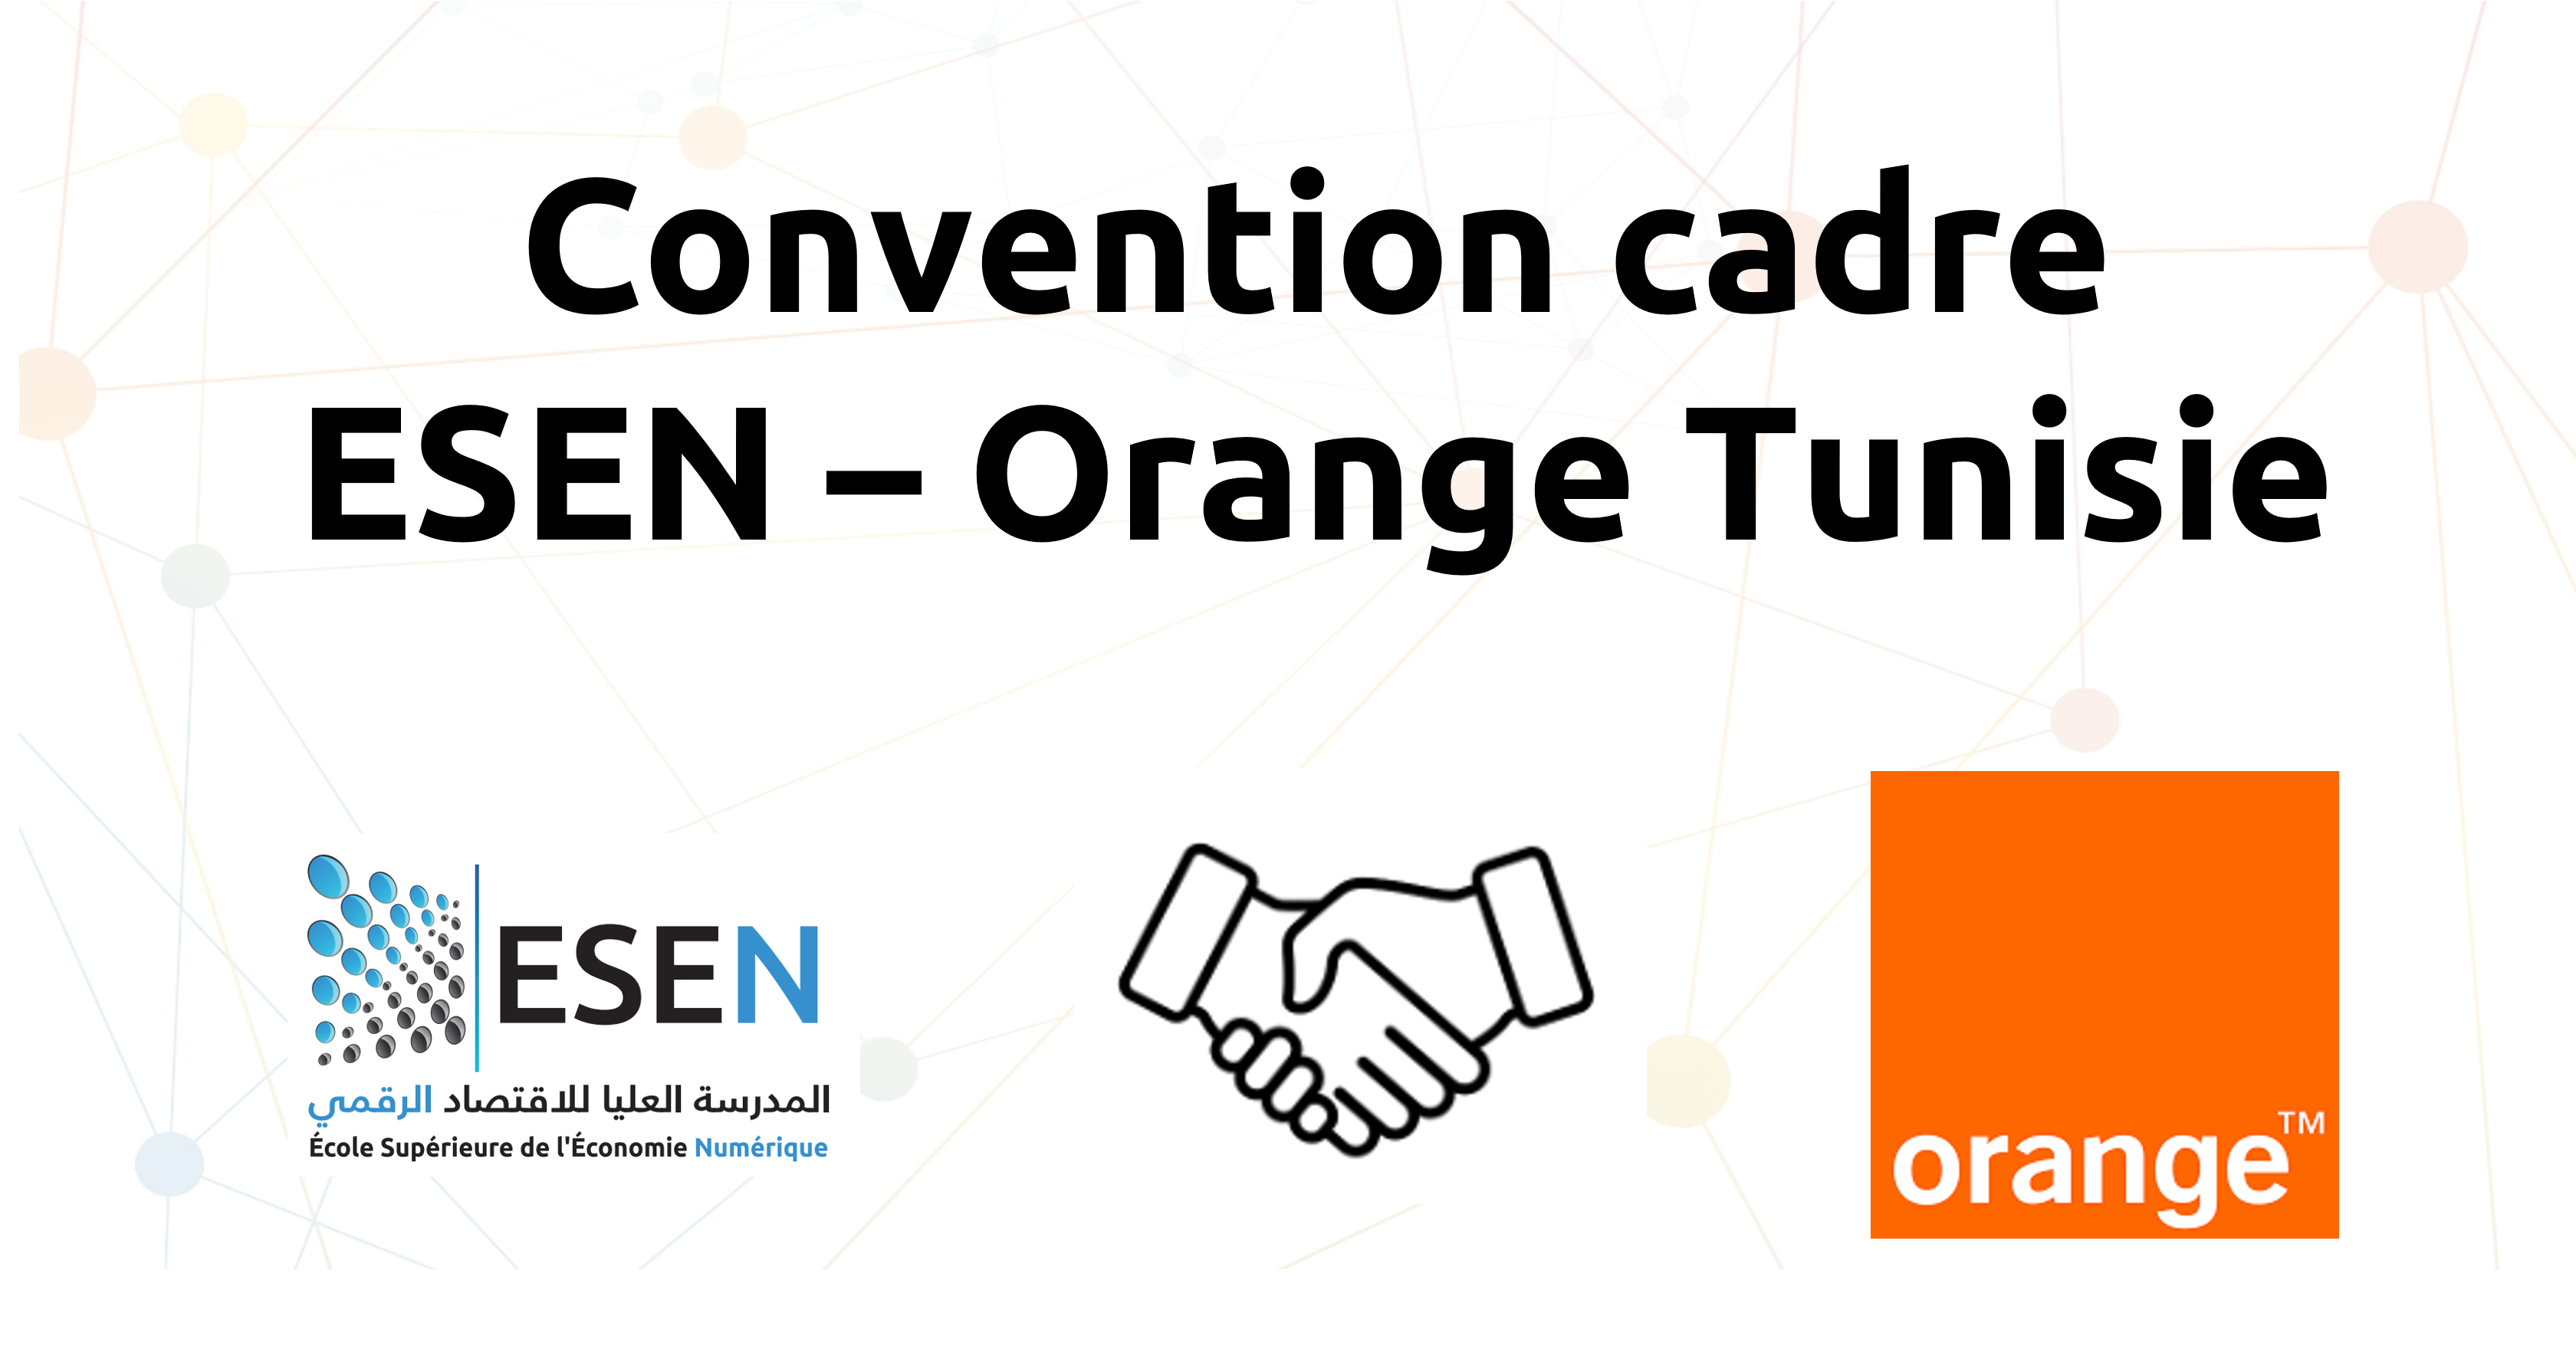 Convention cadre avec Orange Tunisie